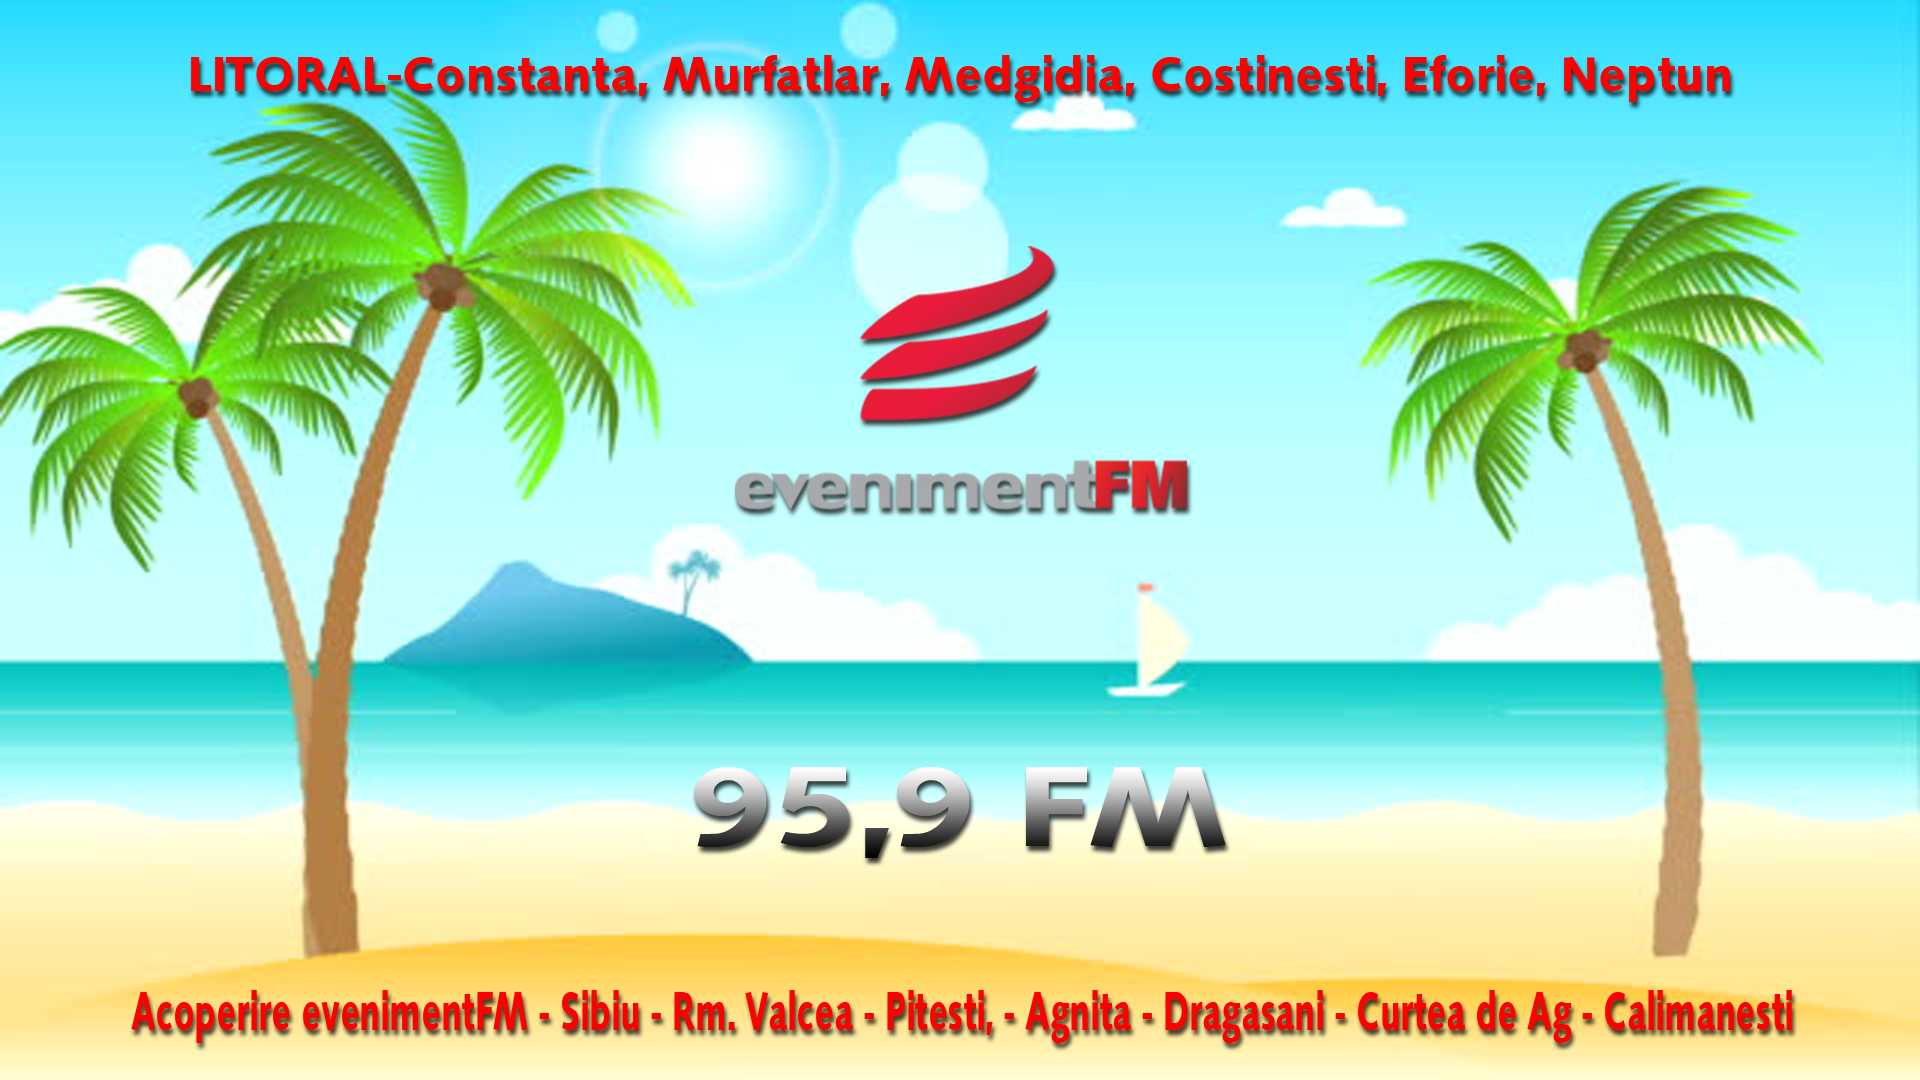 Eveniment FM se aude la mare! 95,9 FM- Noua frecventa Eveniment FM.